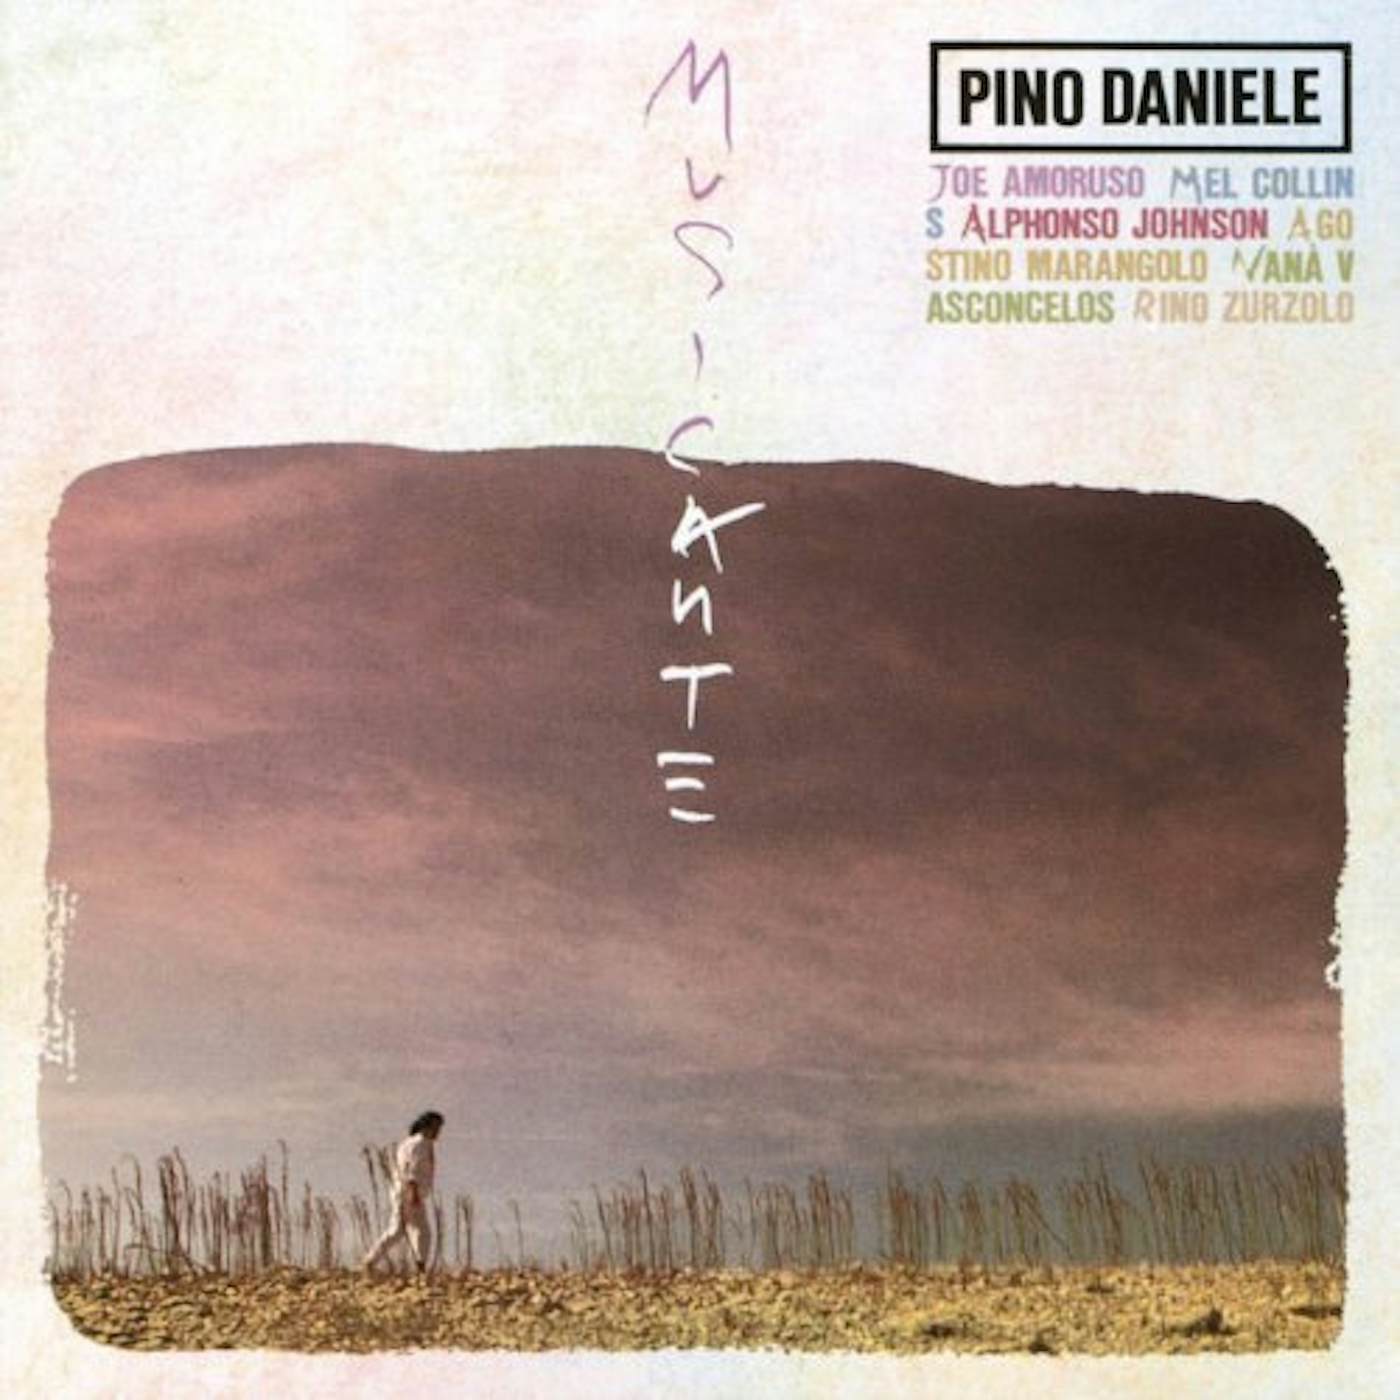 Pino Daniele MUSICANTE CD